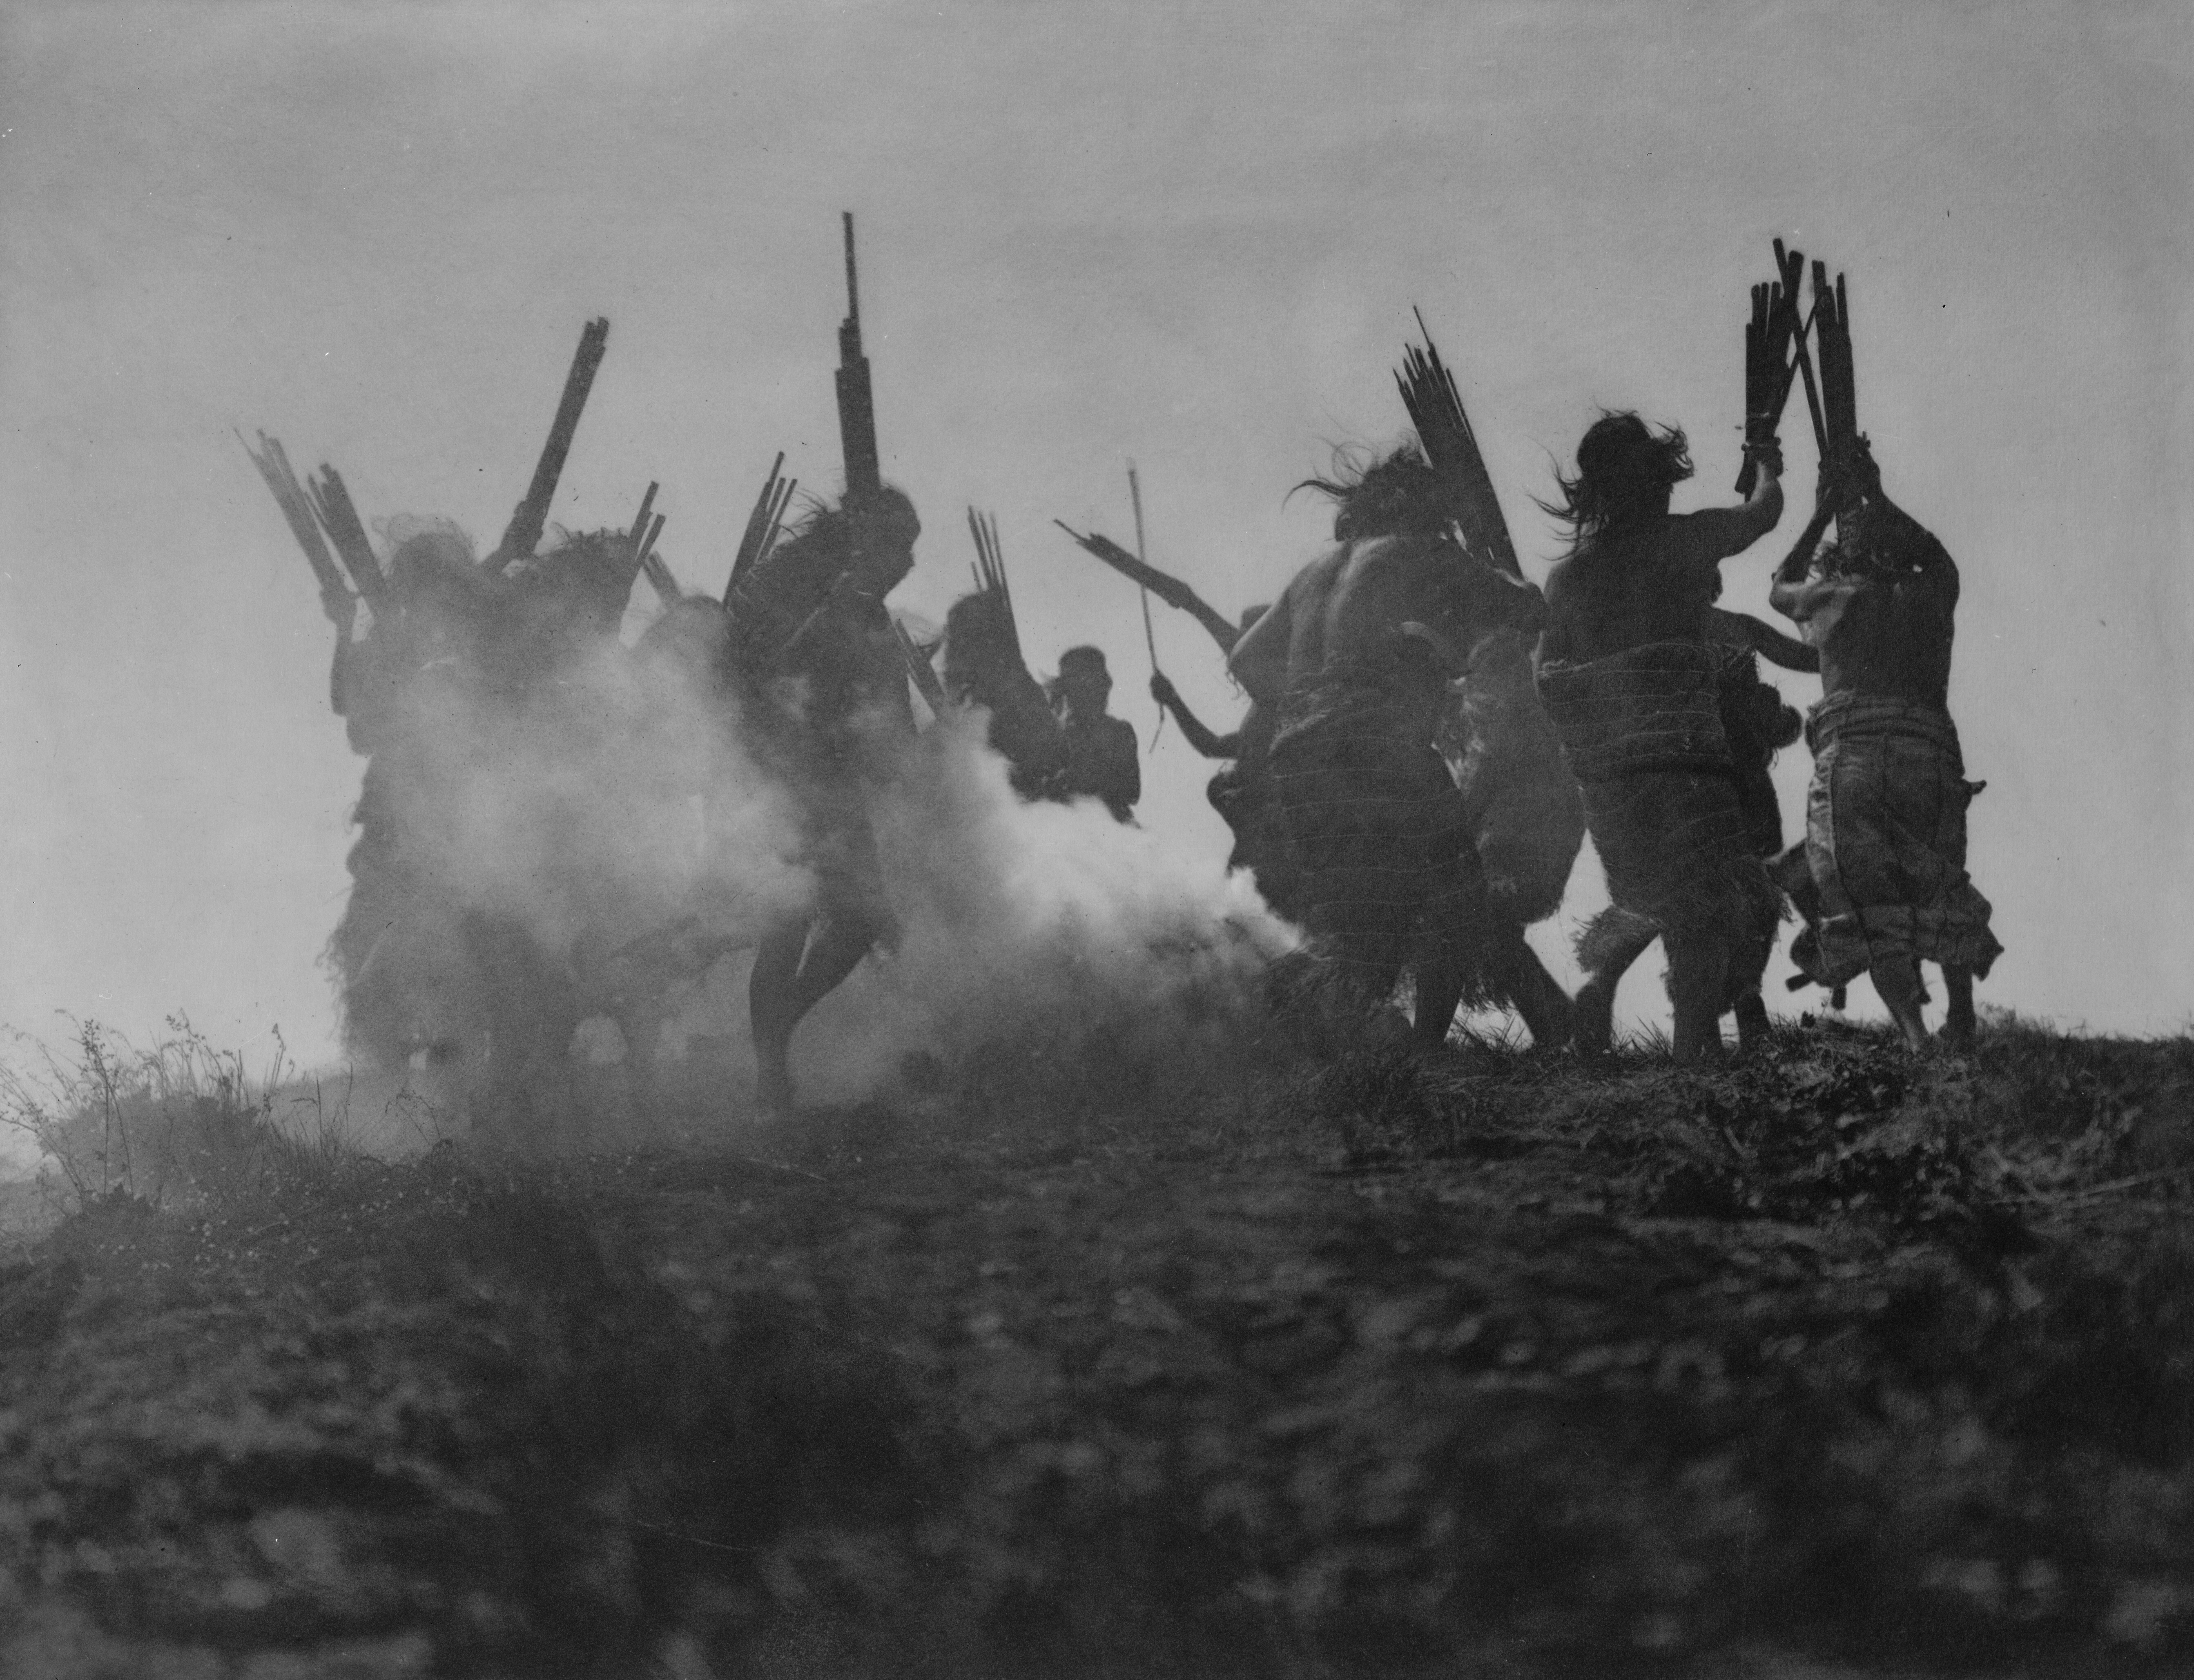 Индейцы народа квакиутл танцуют вокруг дымящегося костра, пытаясь заставить небесную сущность, проглотившую Луну, извергнуть её. Лунное затмение 13 ноября 1914 года. Фотограф Эдвард Кёртис